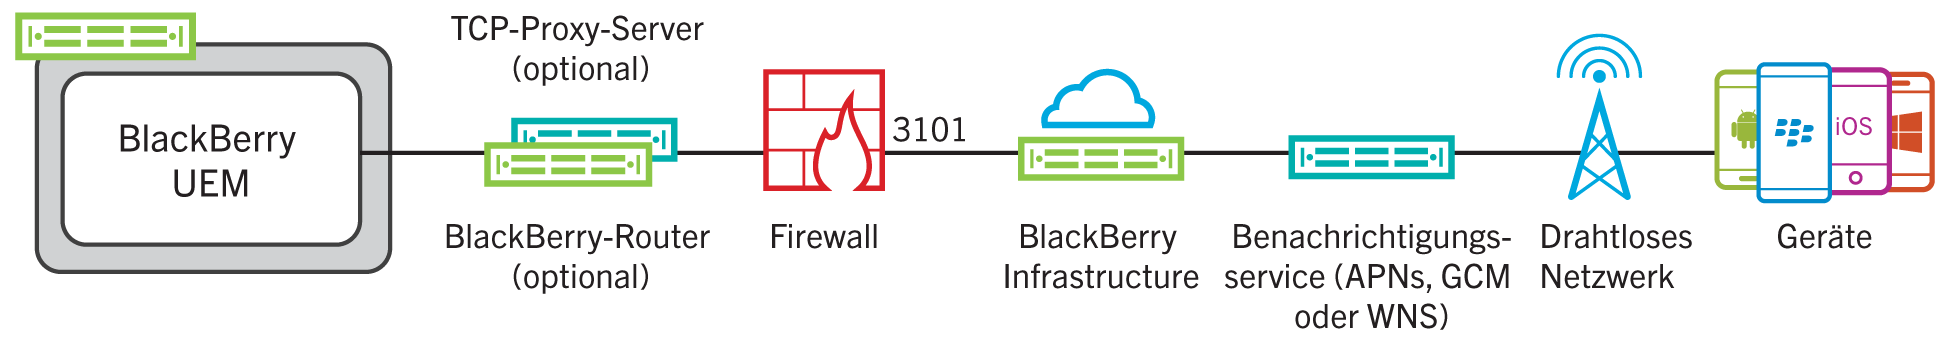 Dieses Diagramm stellt dar, wie BlackBerry UEM eine Verbindung zur BlackBerry Infrastructure über Port 3101 herstellt.